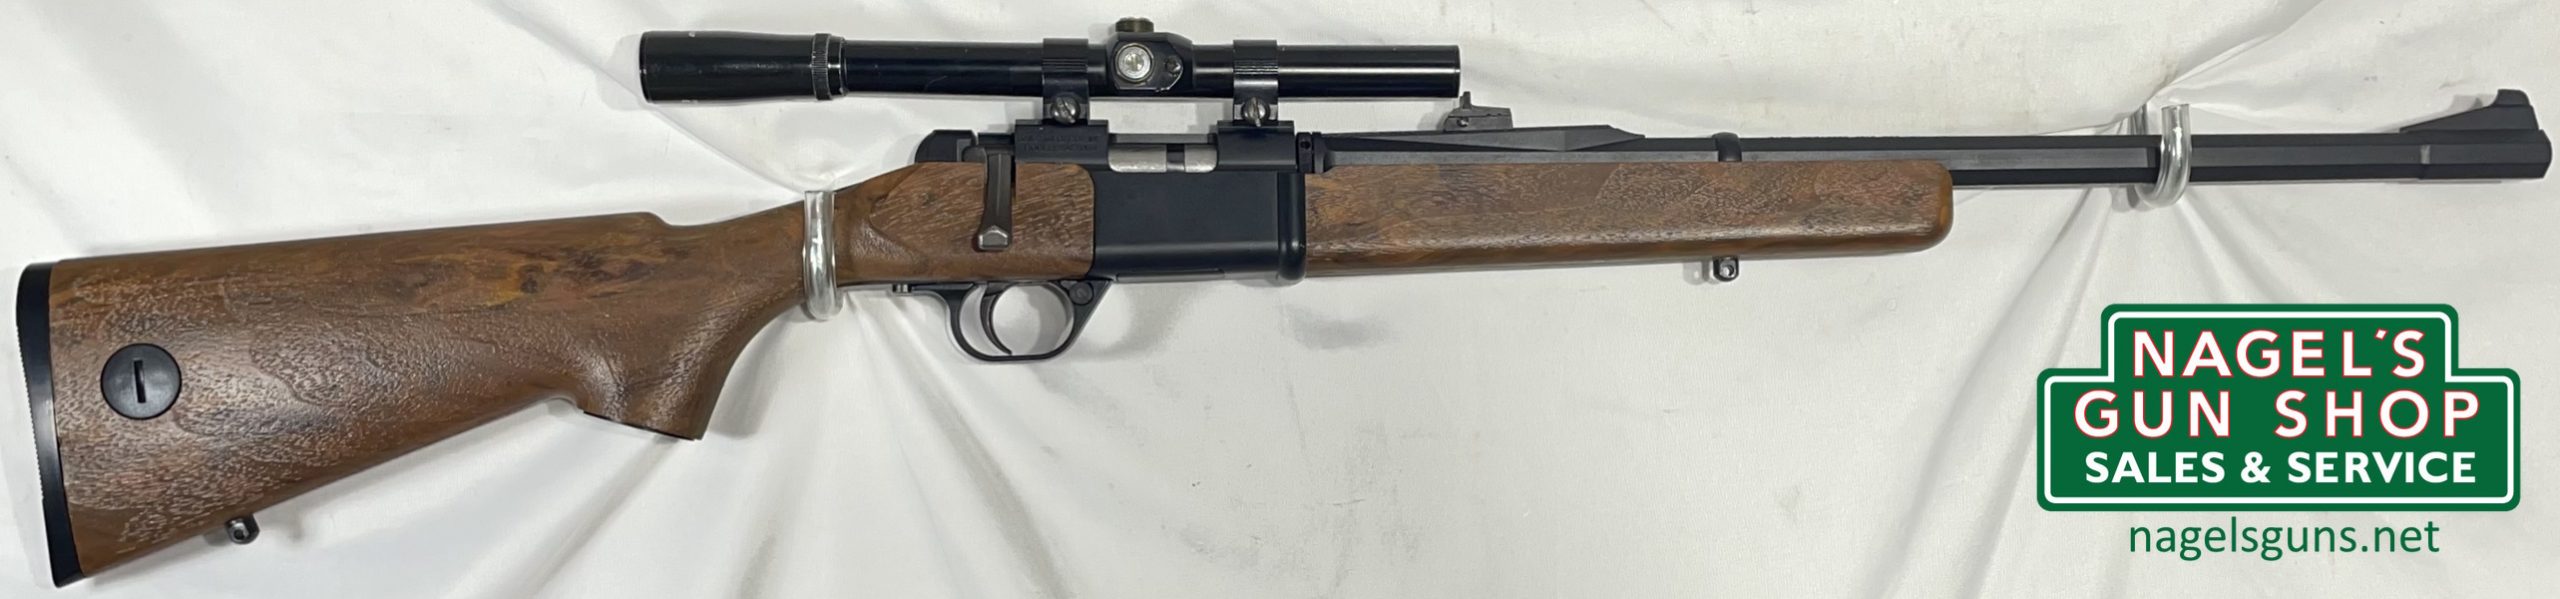 Daisy 2201 22LR Rifle